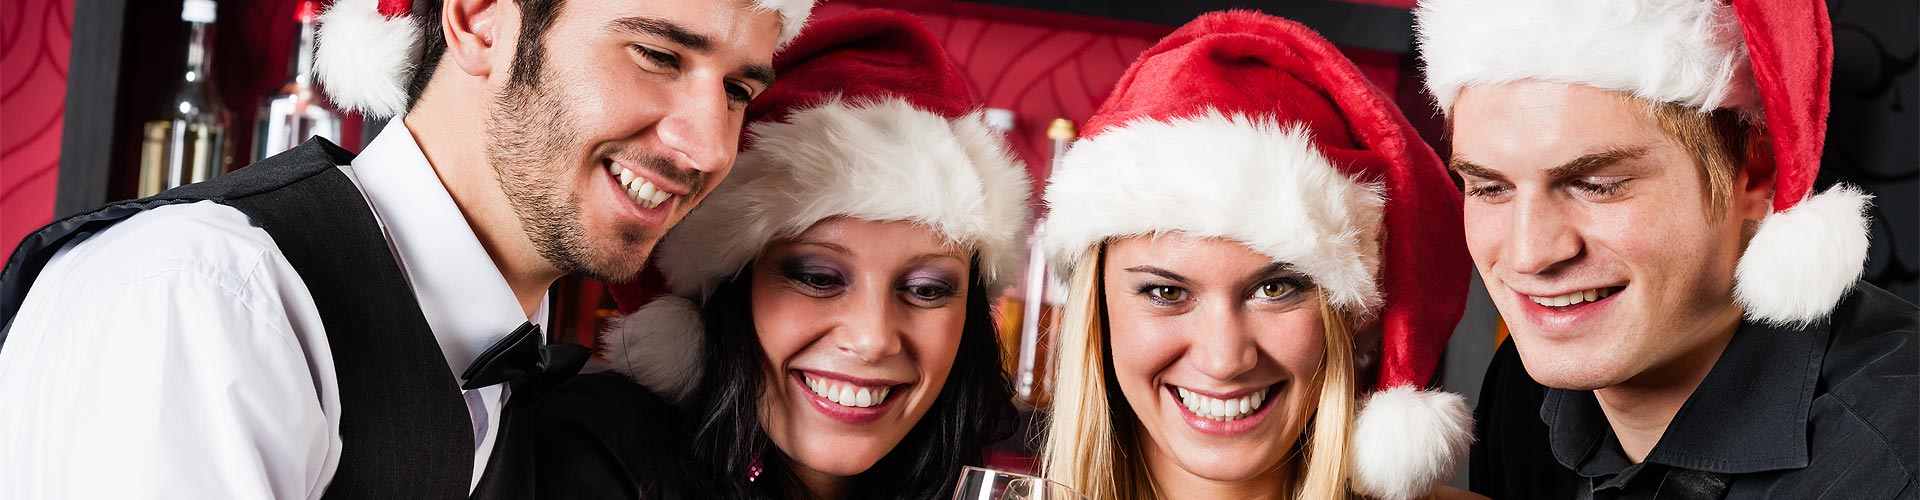 Cenas de Navidad 2021 en Argandenes